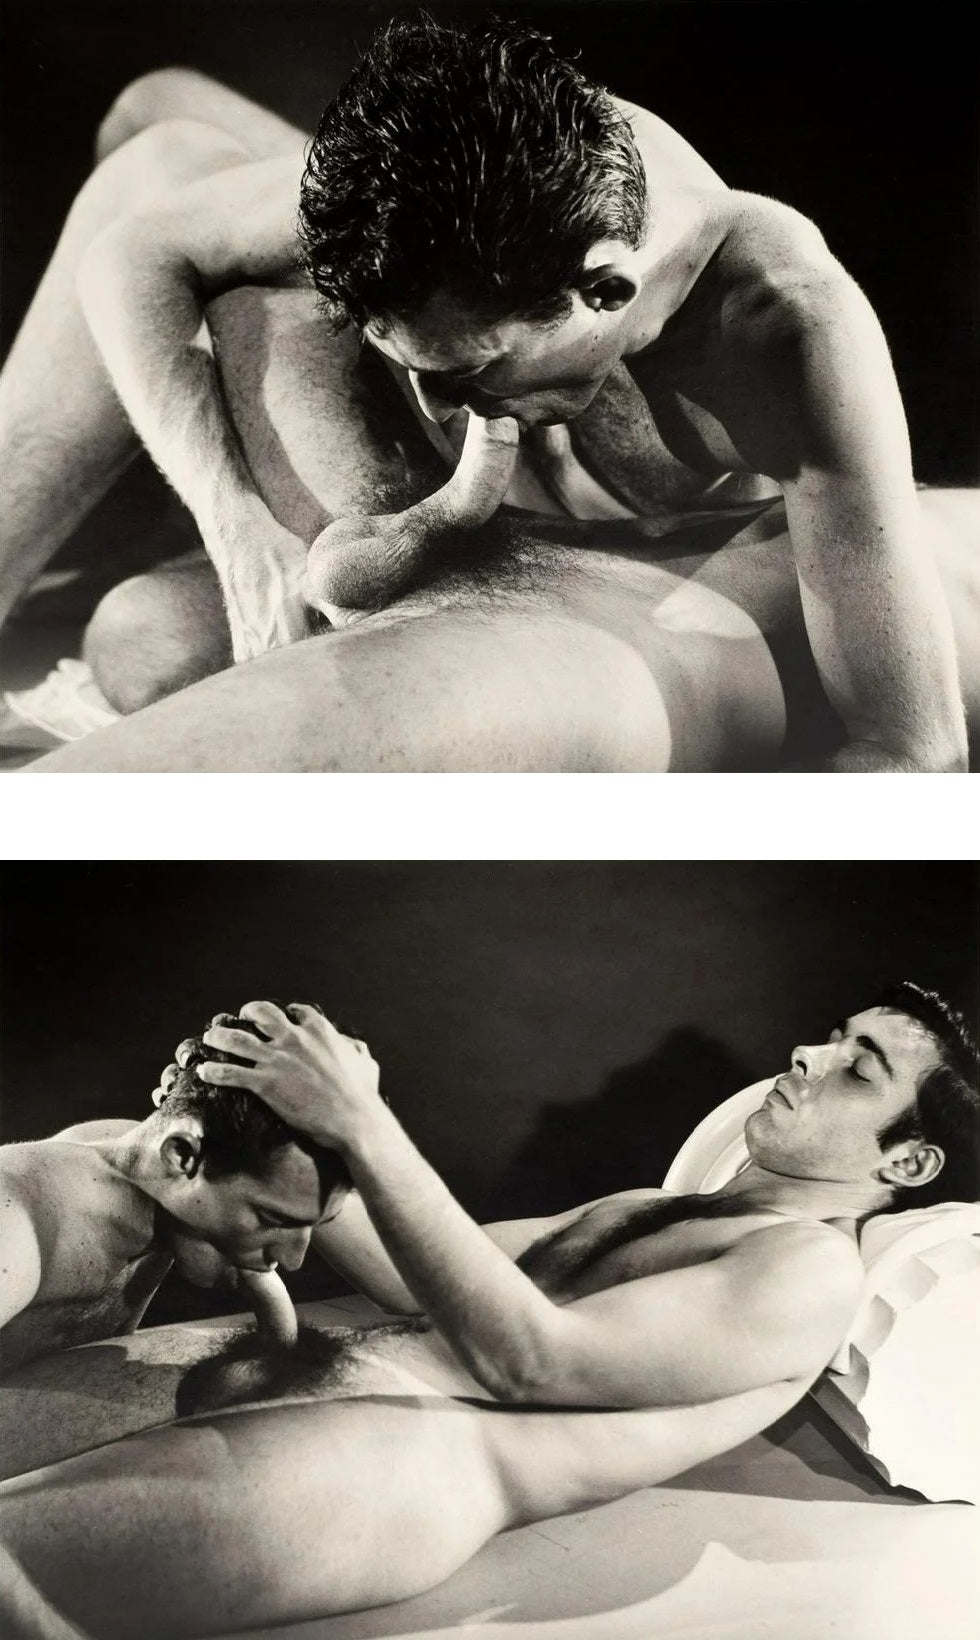 980px x 1640px - Bruce of LA Erotic Gay Blowjob Oral Sex 1960s Homoerotic Vintage Gay I â€“  Jakero77